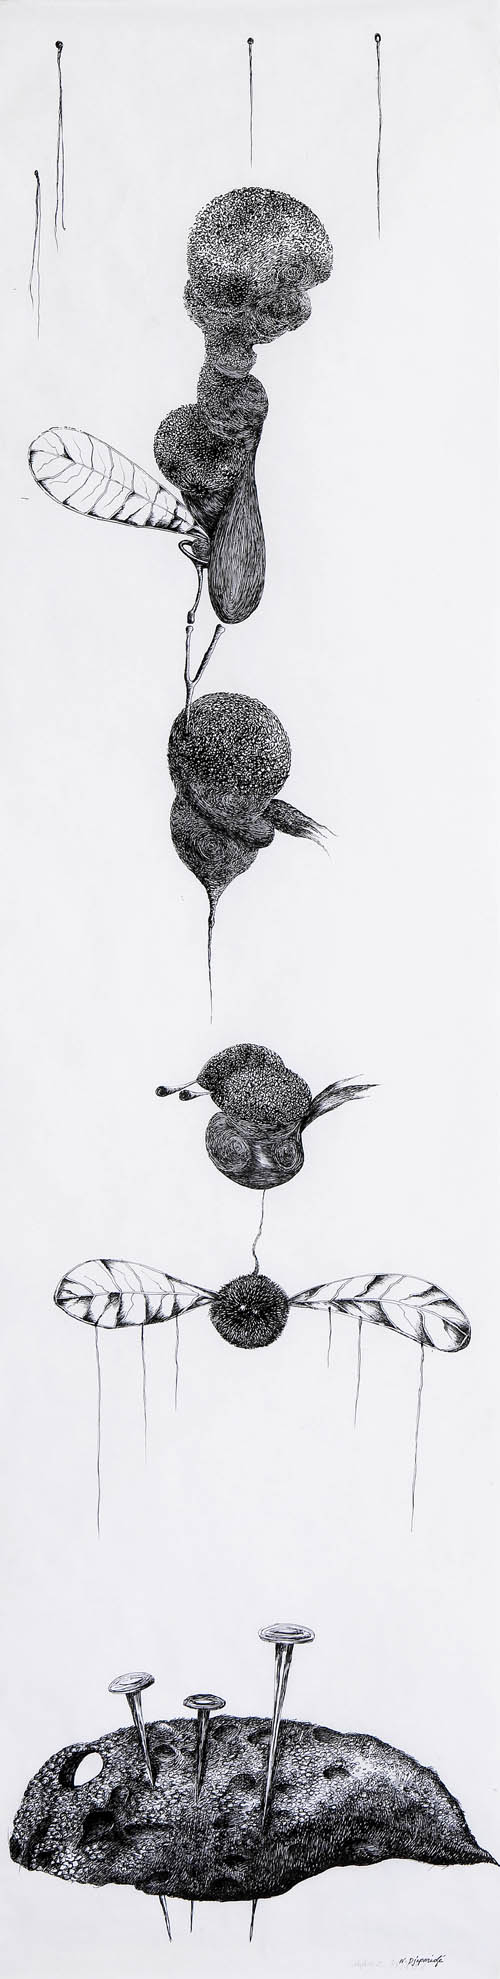 Nino Japaridze - Le bestiaire I (The Bestiary I) - 2008 ink on paper